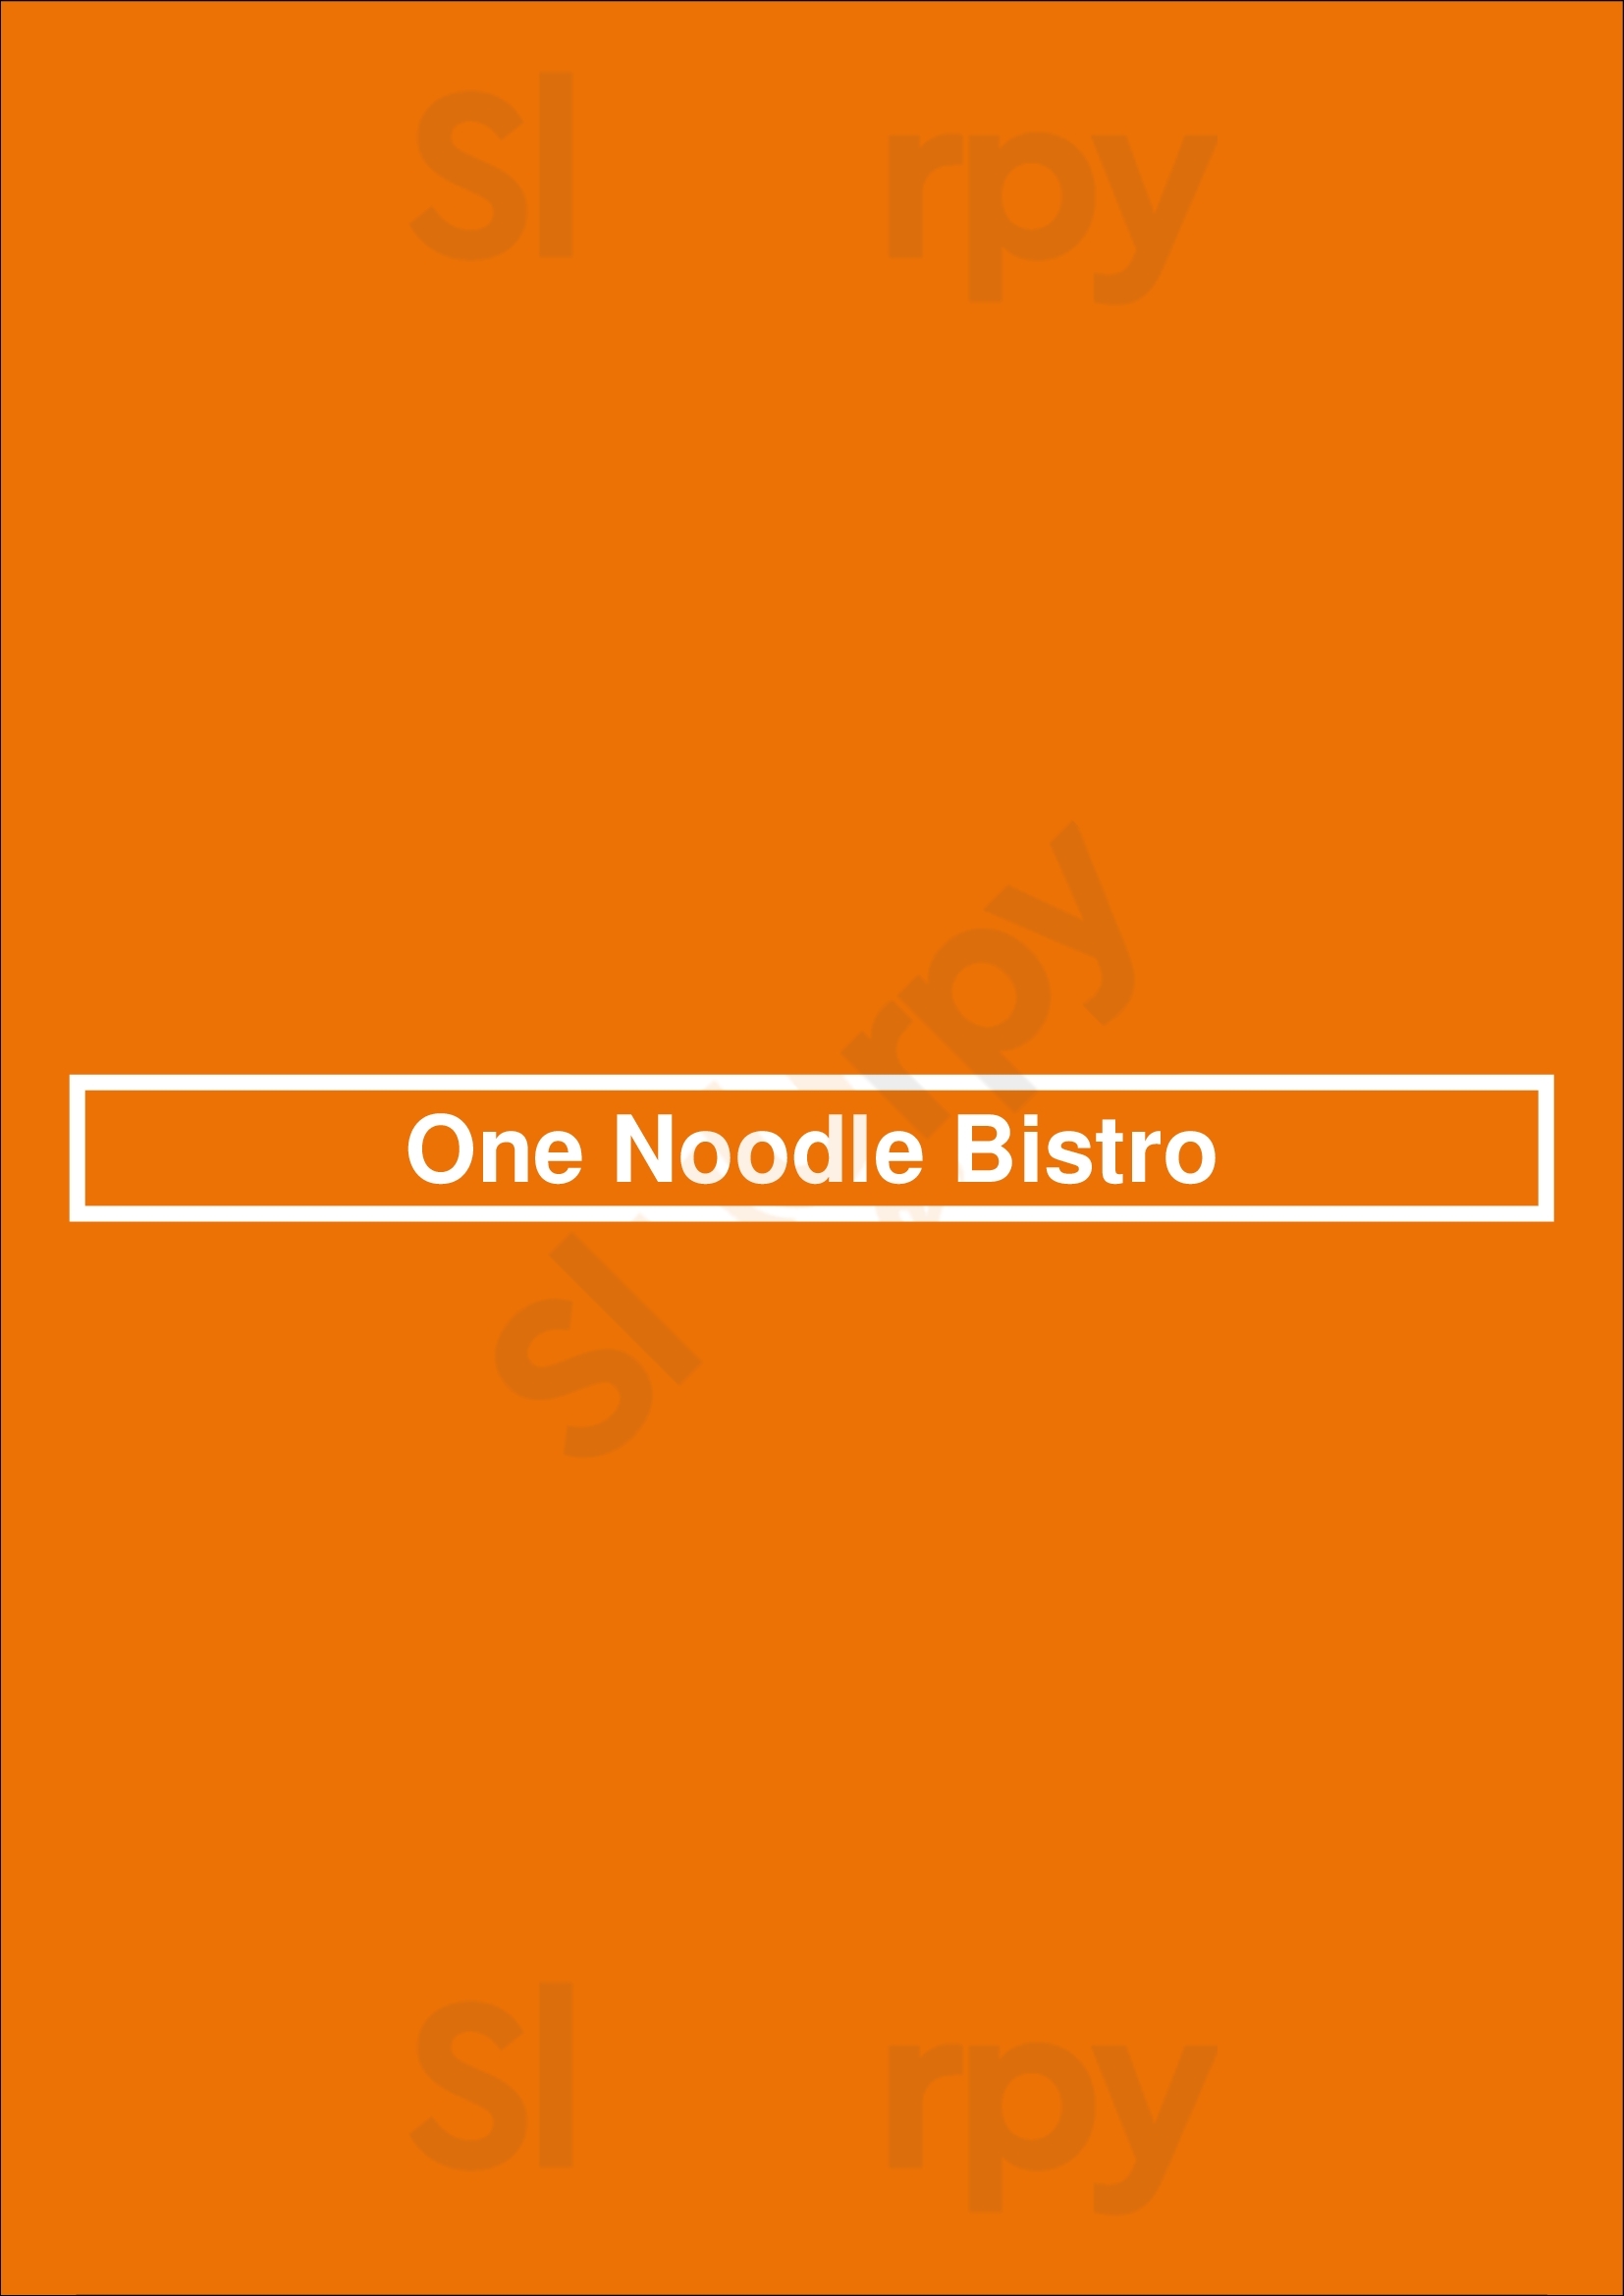 One Noodle Bistro Vancouver Menu - 1